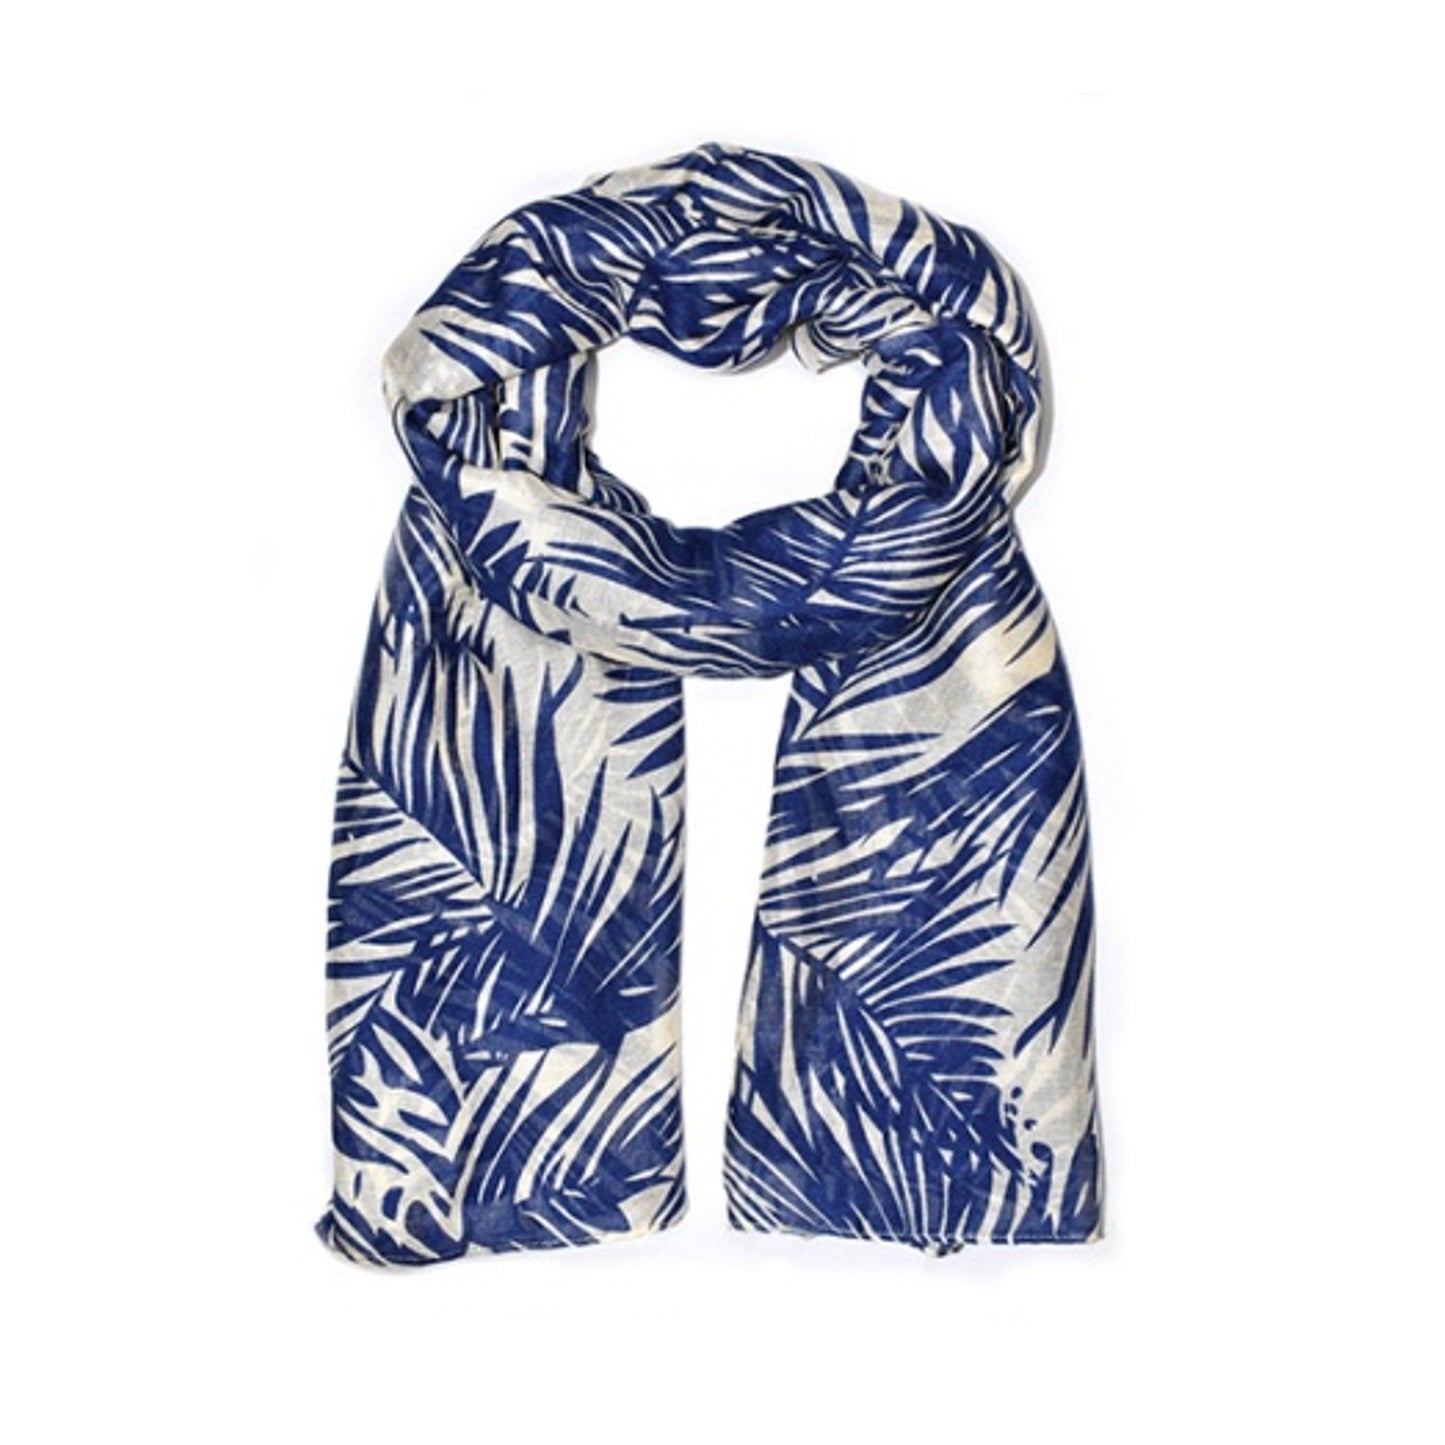 Palm leaf printed scarf